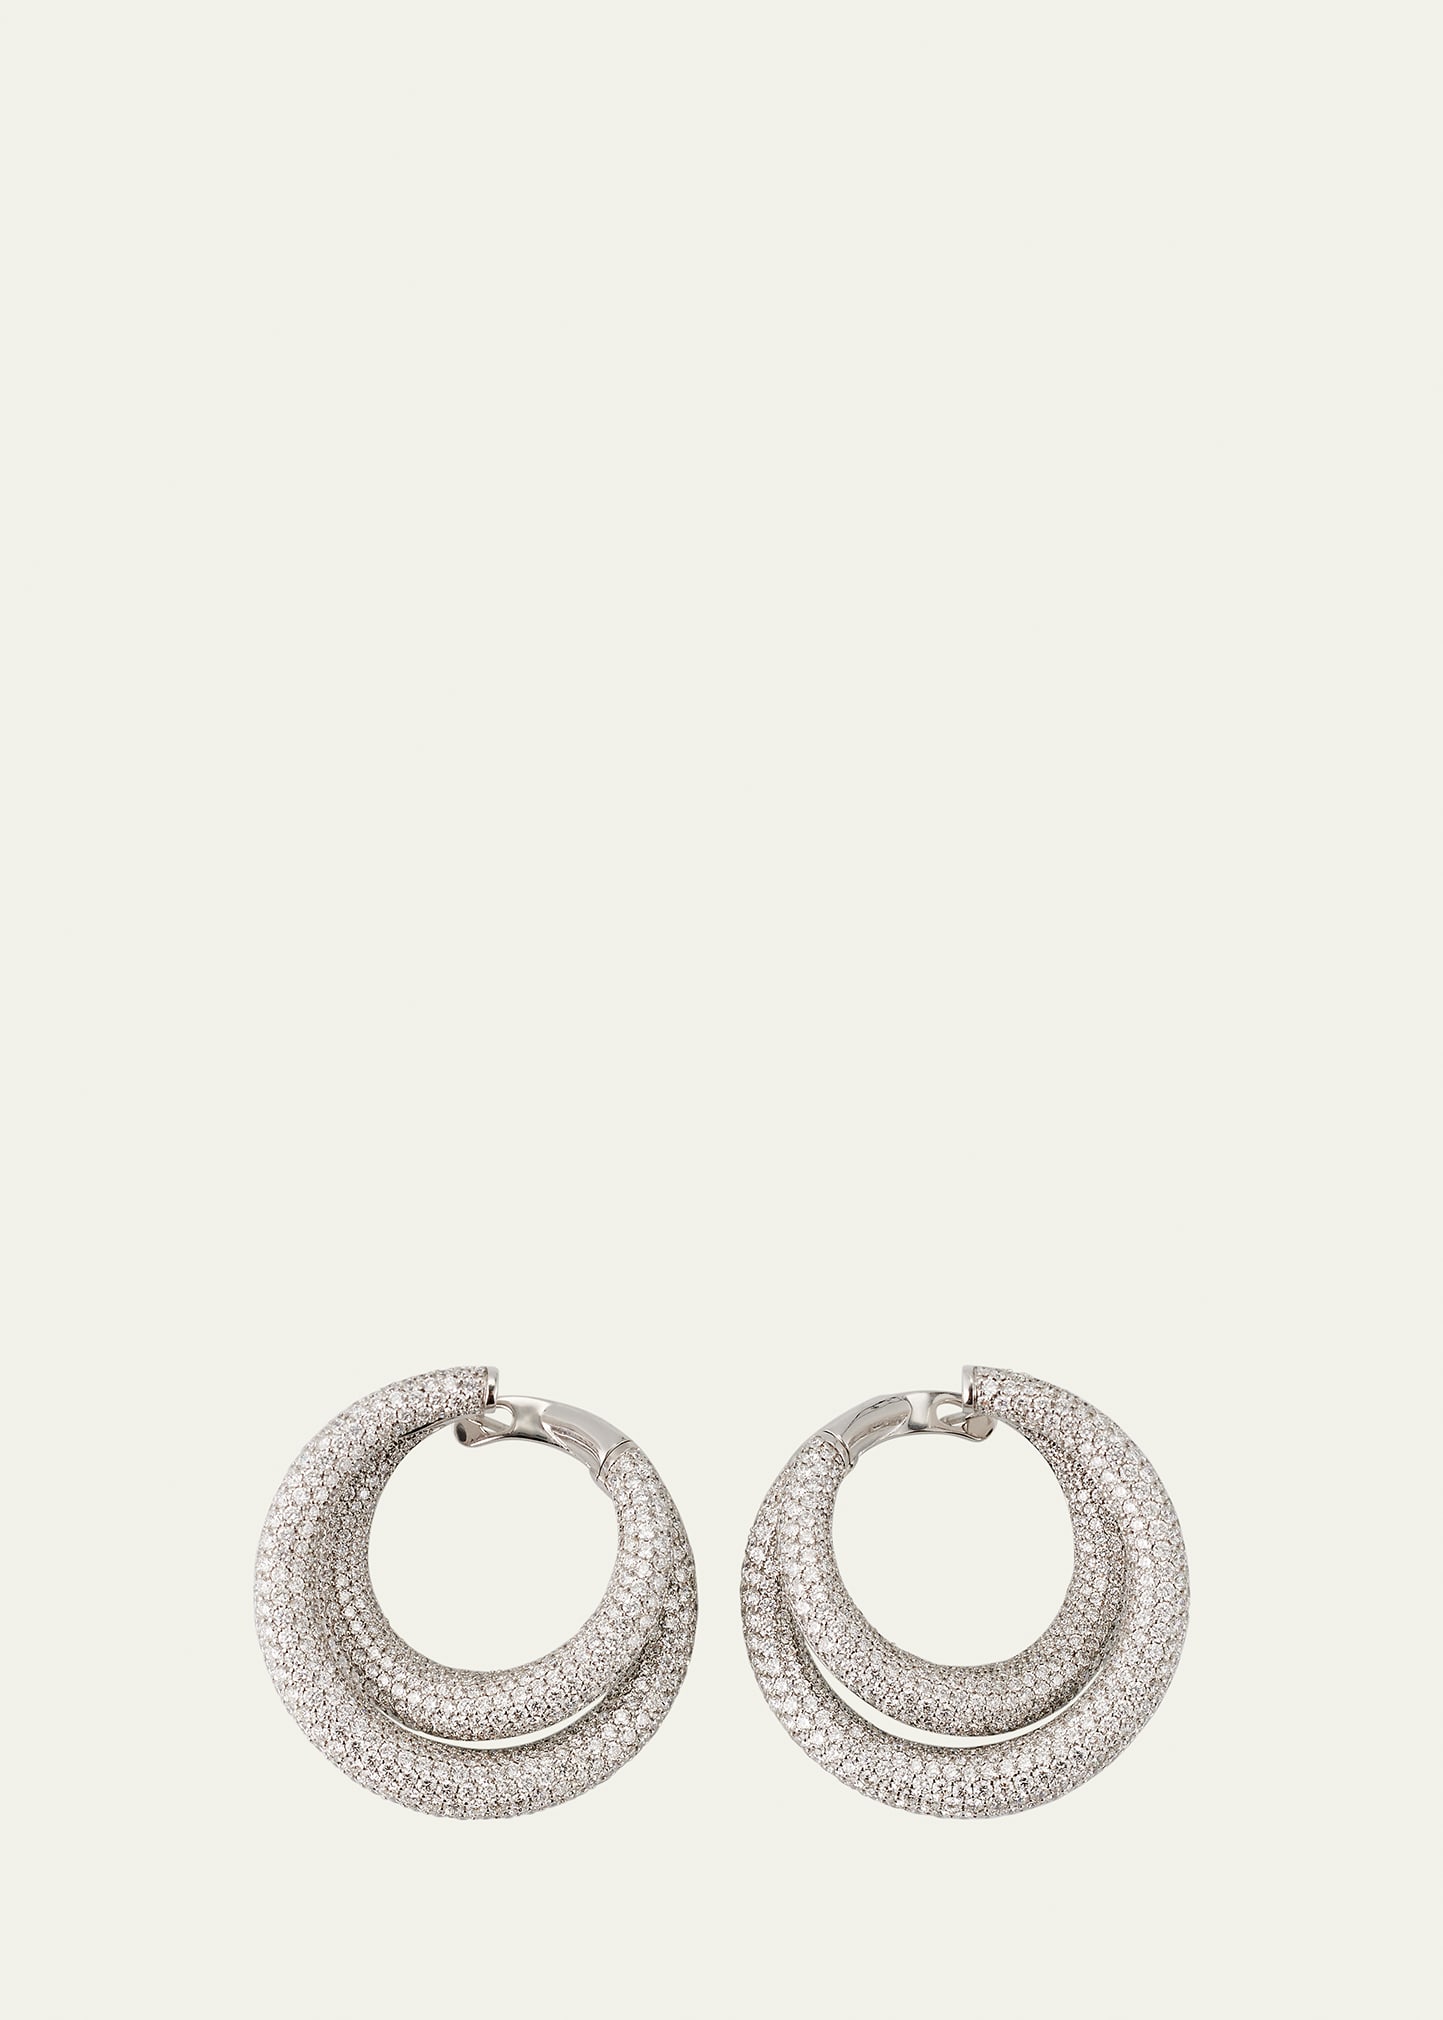 Engelbert The Loop Earrings -infinity Loop Full Pavé, Big, In White Gold And White Diamonds In Metallic